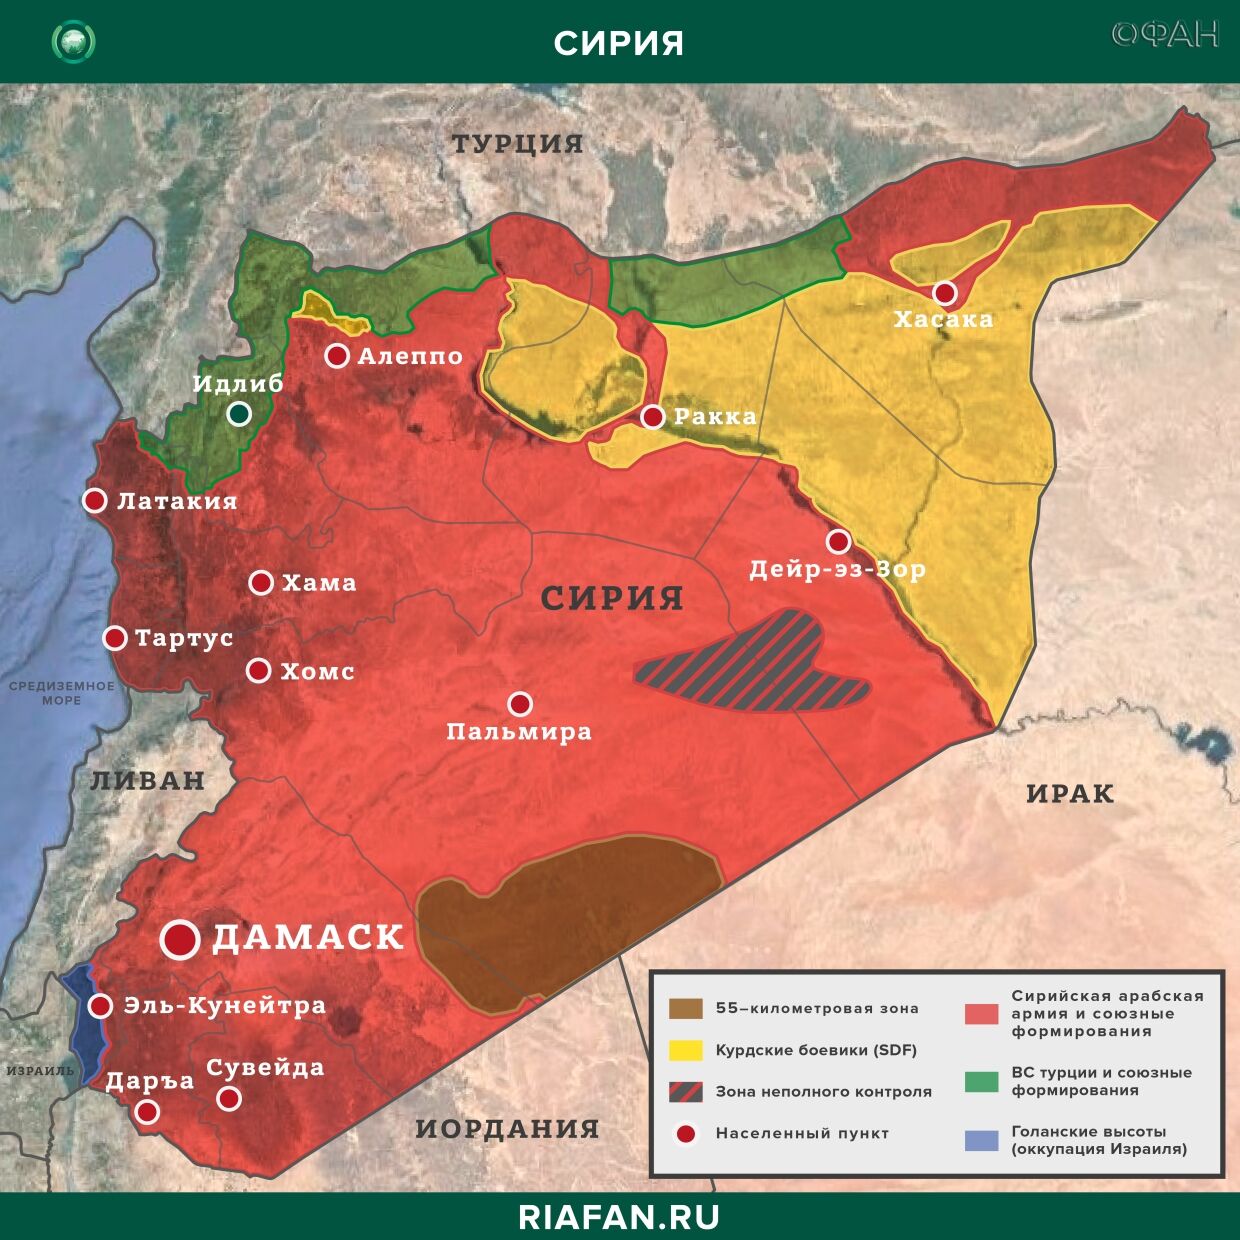 Nouvelles de Syrie 22 Mars 19.30: ХТШ пополняет ряды в Идлибе, курдские боевики провели рейды в Дейр-эз-Зоре